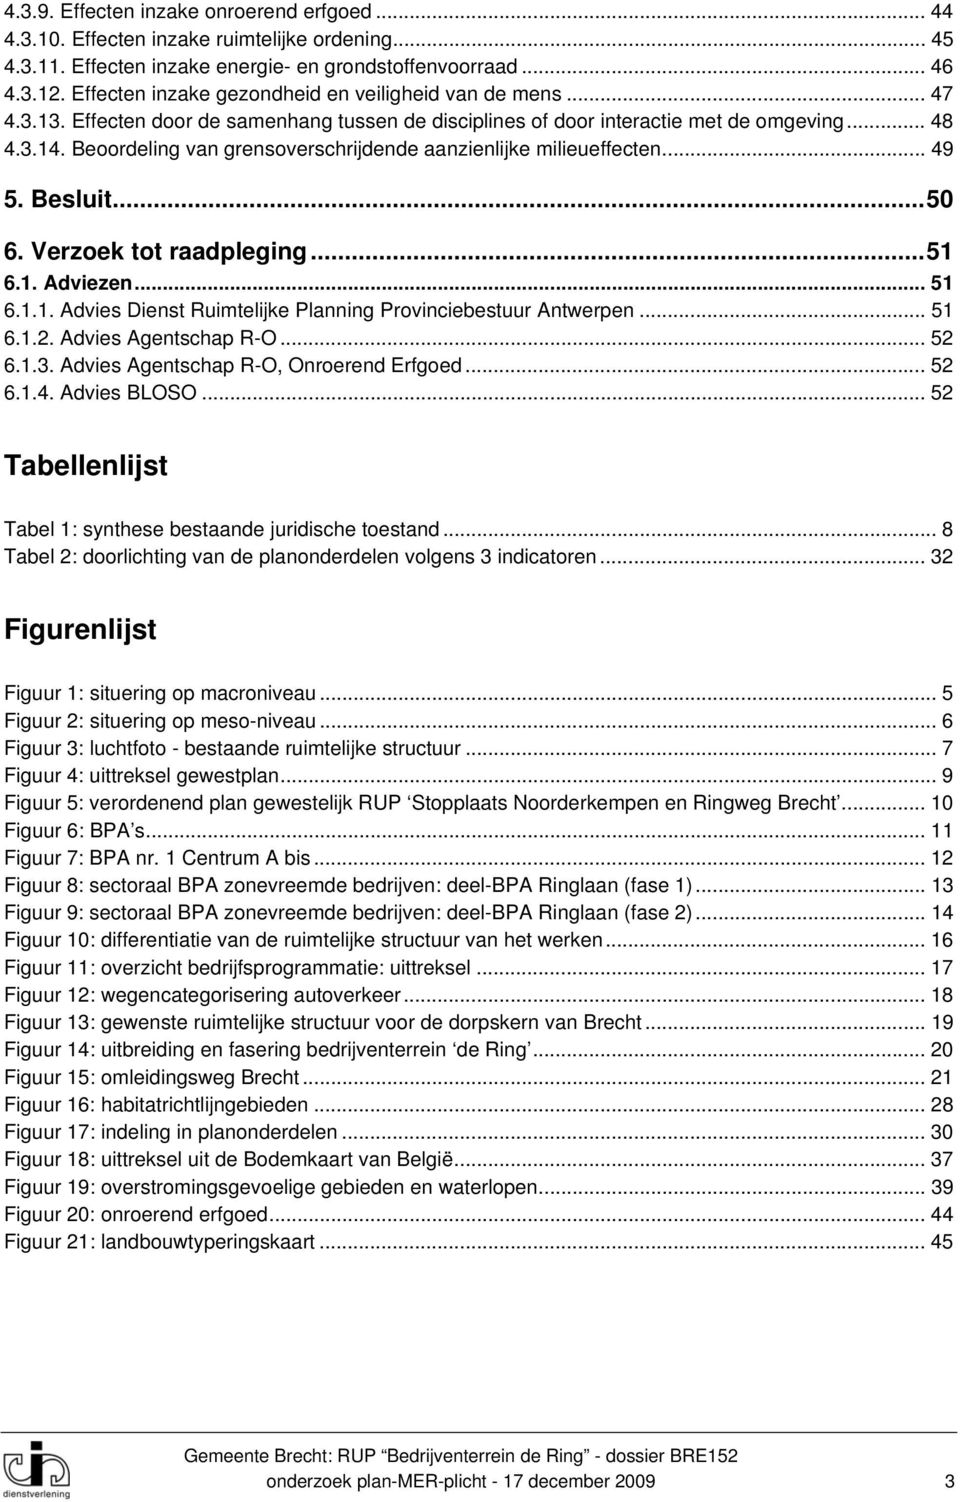 Beoordeling van grensoverschrijdende aanzienlijke milieueffecten... 49 5. Besluit... 50 6. Verzoek tot raadpleging... 51 6.1. Adviezen... 51 6.1.1. Advies Dienst Ruimtelijke Planning Provinciebestuur Antwerpen.